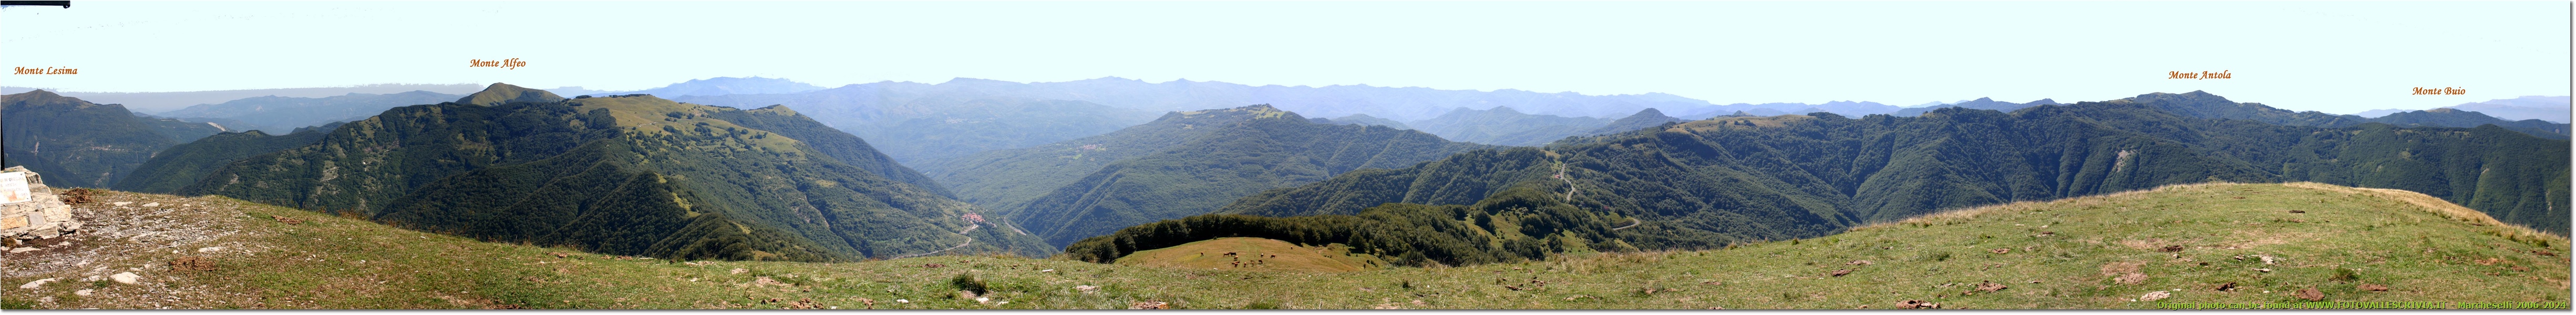 Panoramica dal Monte Carmo, da est ad ovest  - Altro - 2006 - Panorami - Estate - Canon EOS 300D